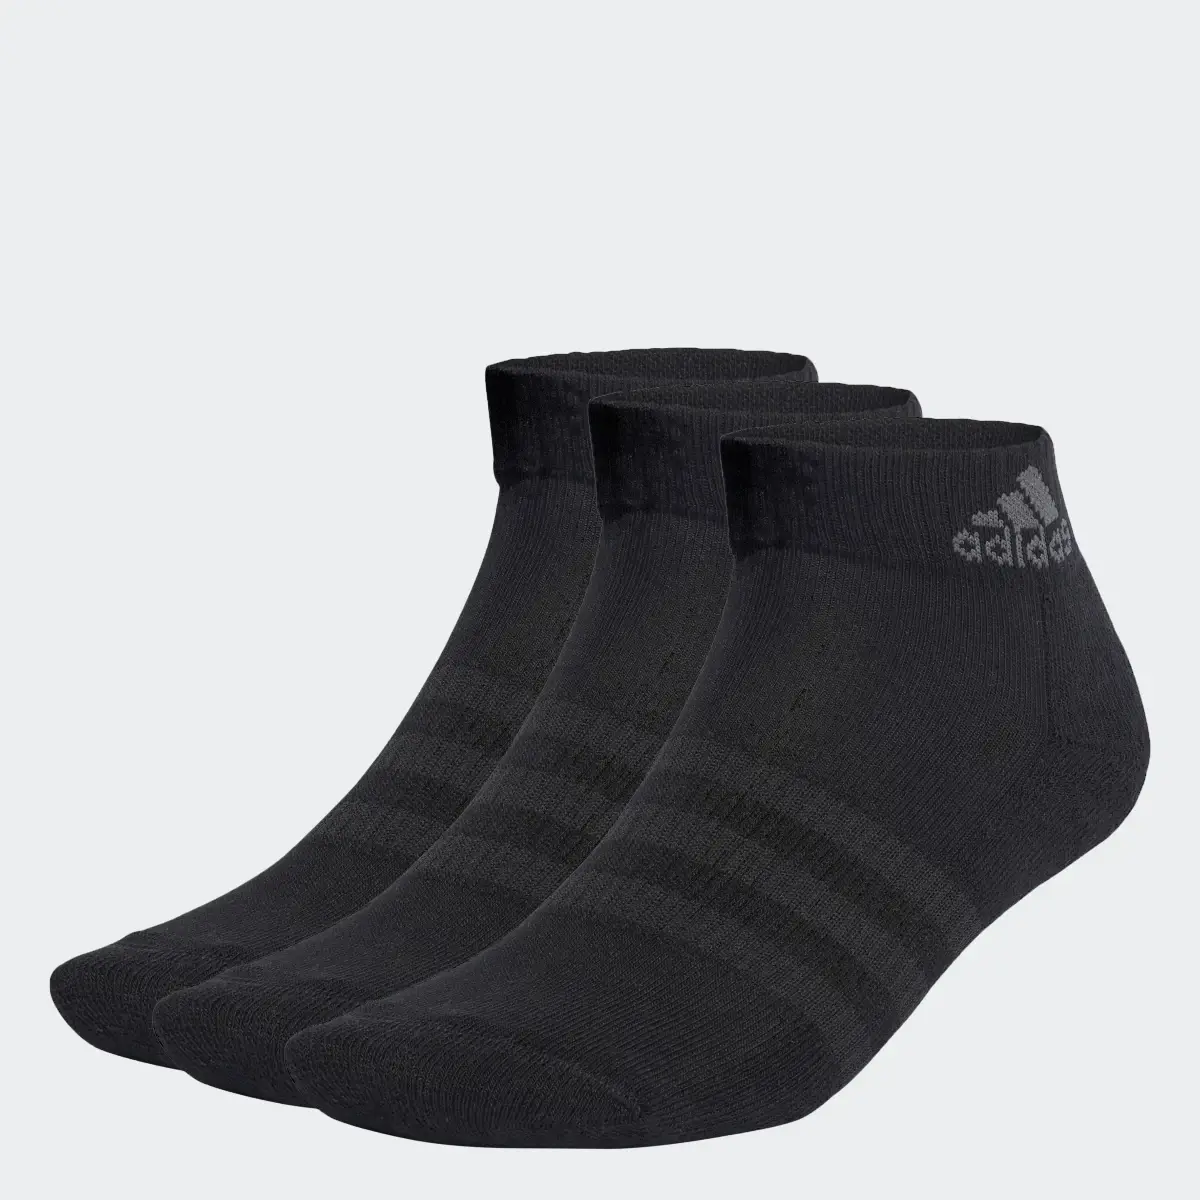 Adidas Yastıklamalı Bilek Boy Çorap - 3 Çift. 1